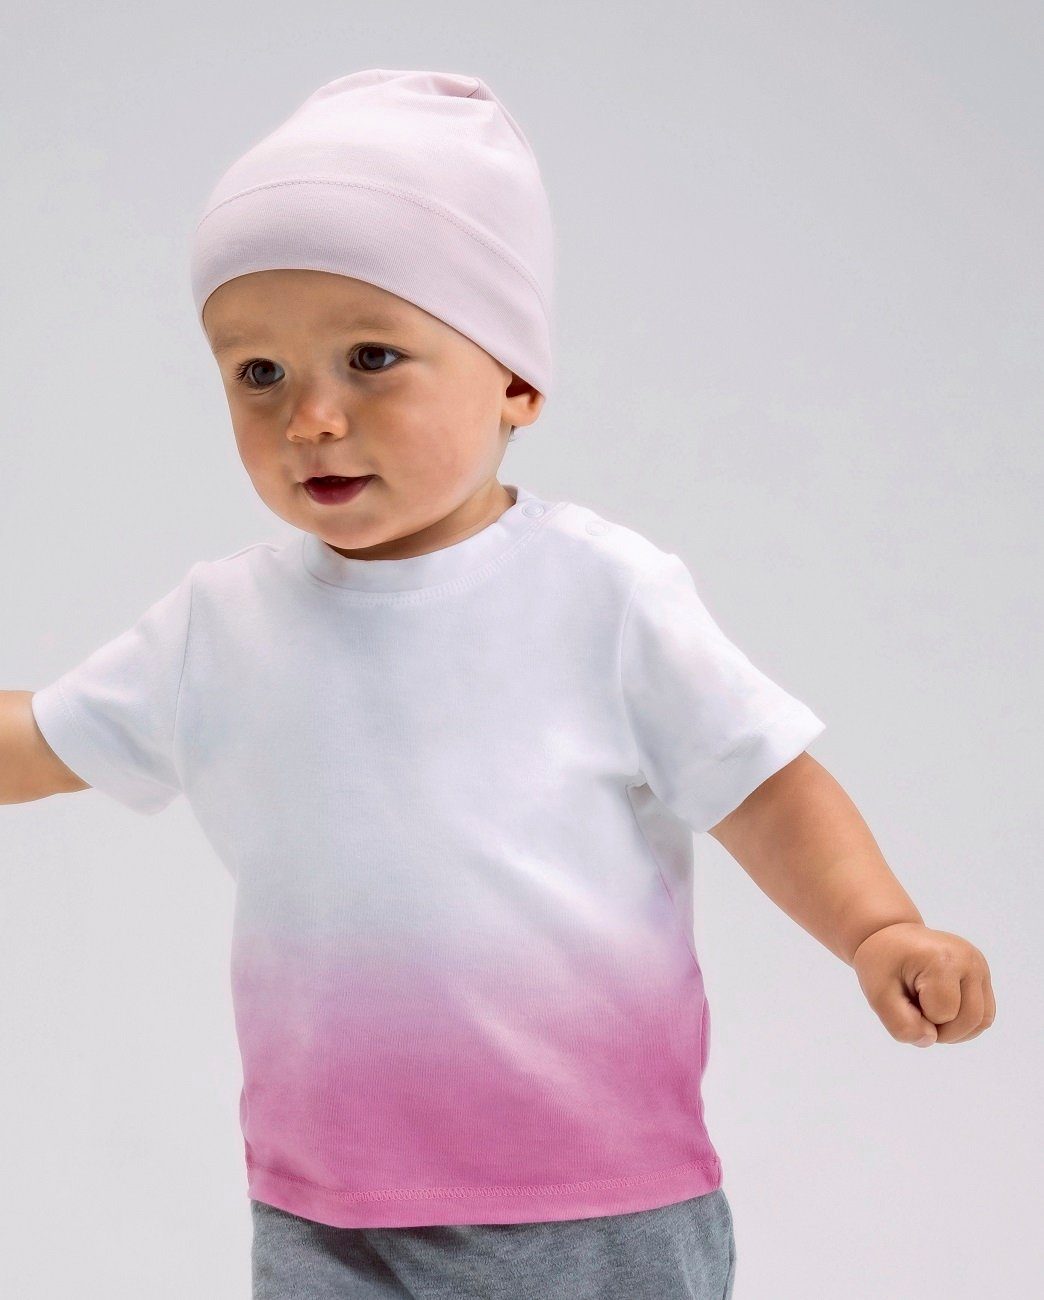 BABYBUGZ T-Shirt 1er / 2er / 3er Set Baby / Kinder Shirt für Mädchen u. Jungen aus 100% Bio-Baumwolle in zwei Farben (3-tlg) 0 Monate bis 3 Jahre